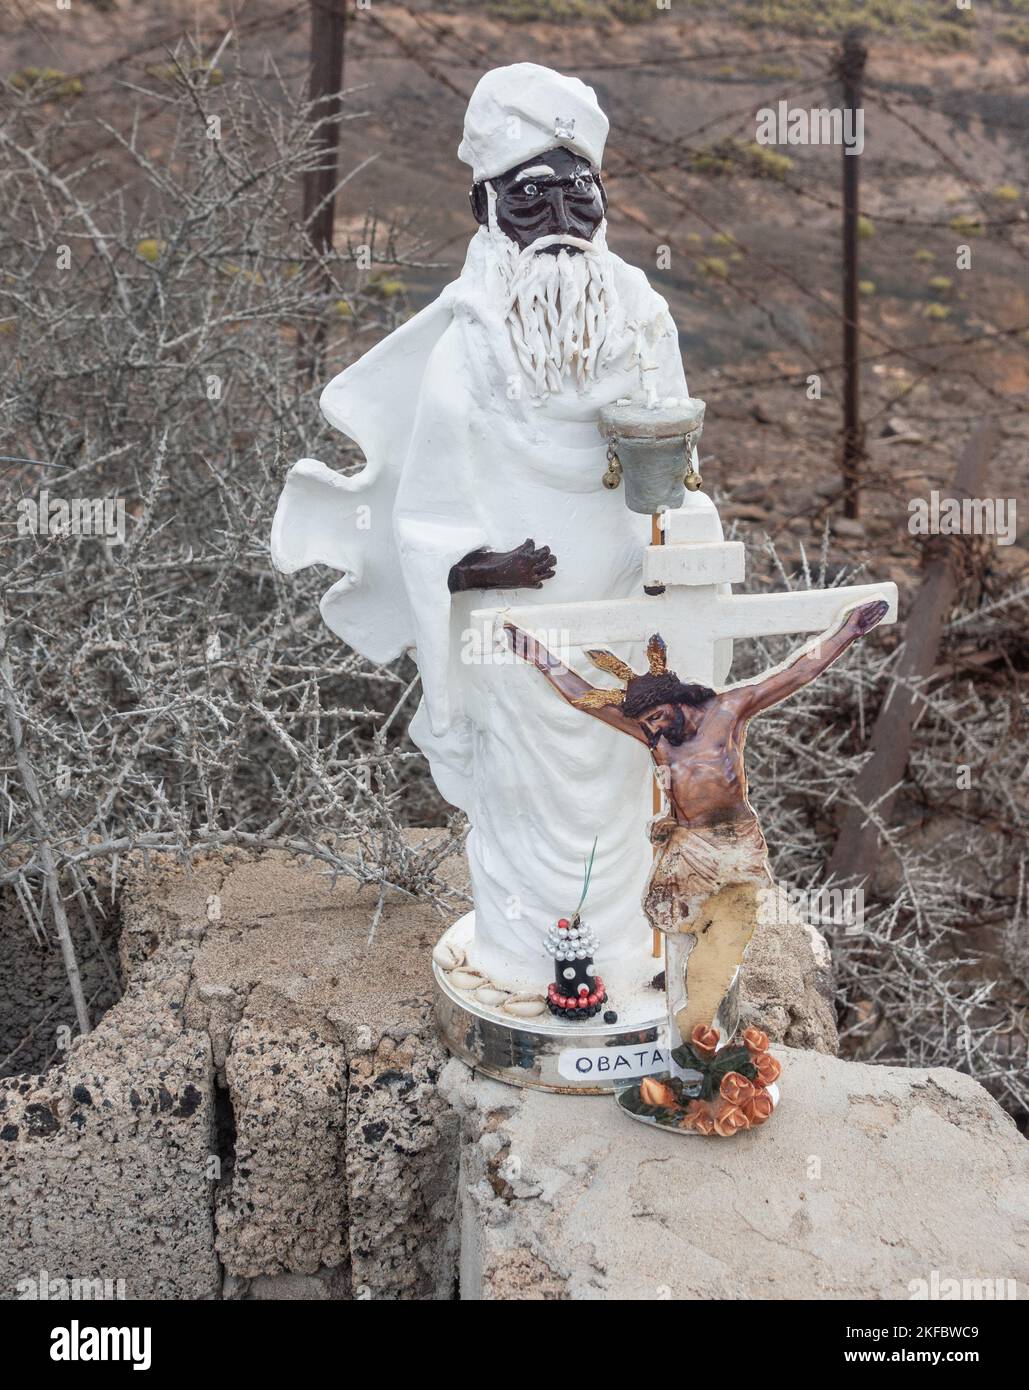 Piccole statue di Obatala e di Gesù Cristo sulla strada. Nelle fedi orisha, Obatalá è il padre del cielo. Foto Stock